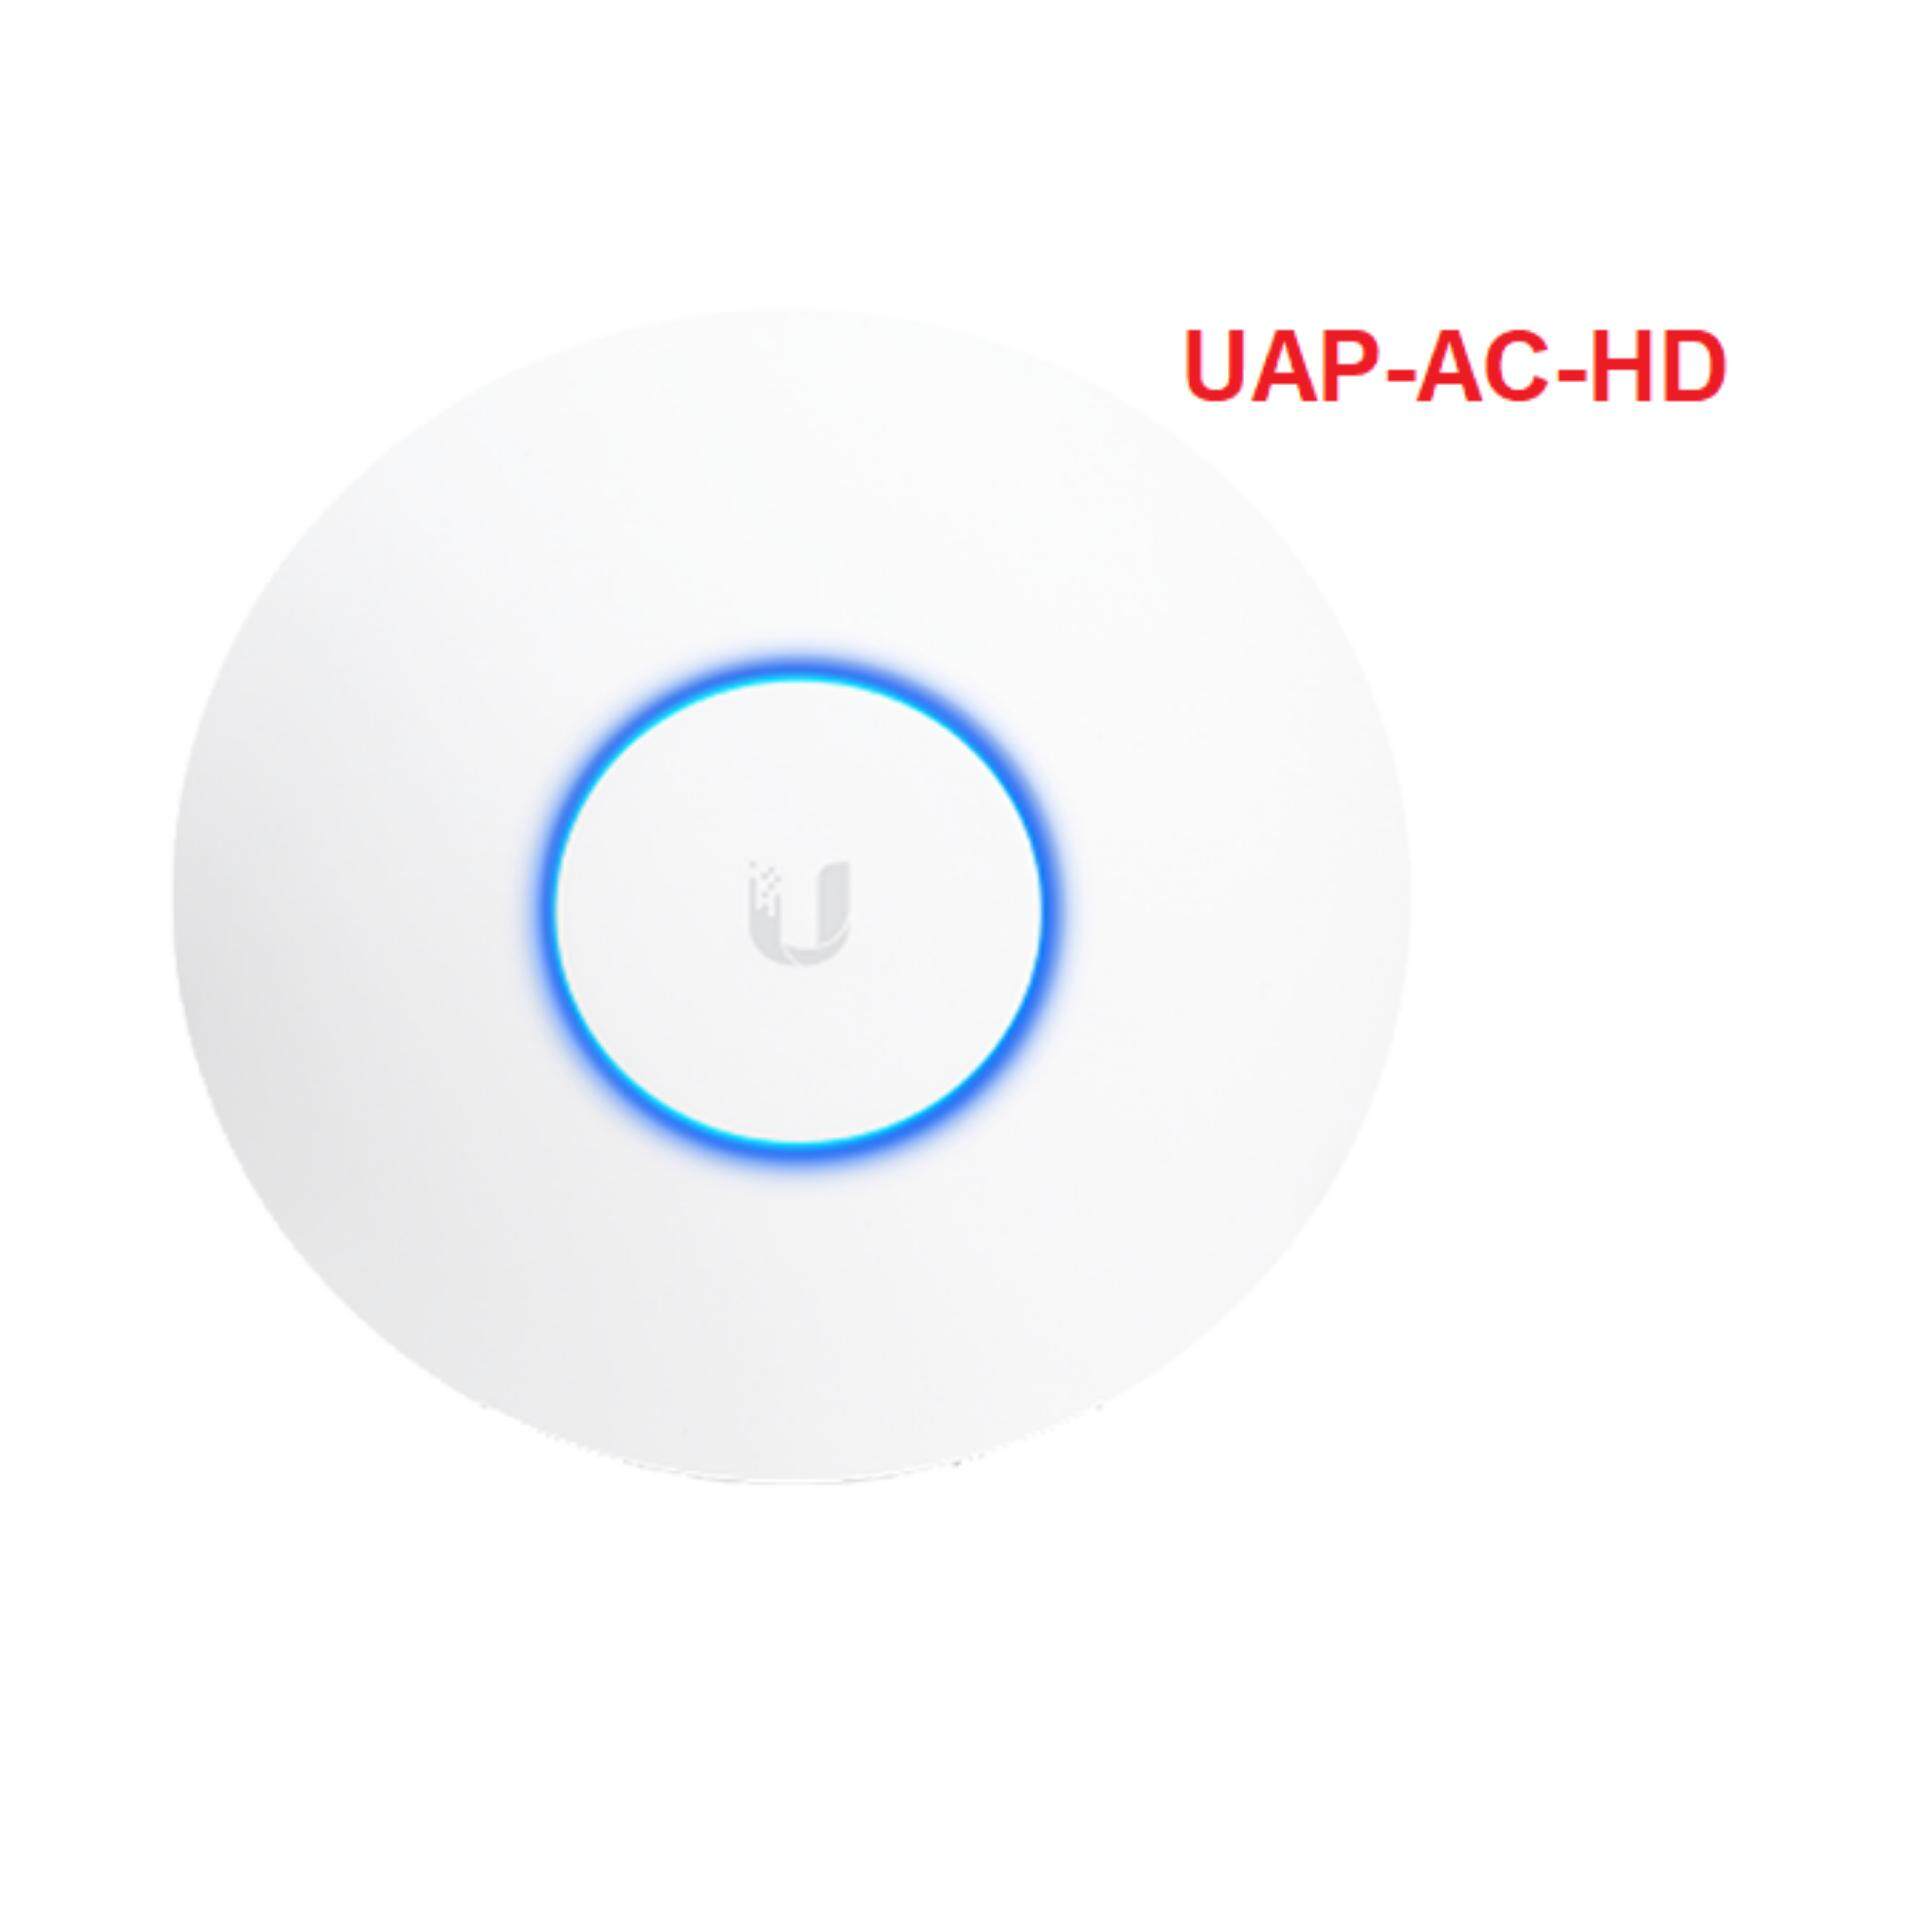 PART#UAP-AC 100/% NEW AP AC ACCESS POINT 1750 Mbps UNIFI UBIQUITI 802.11ac